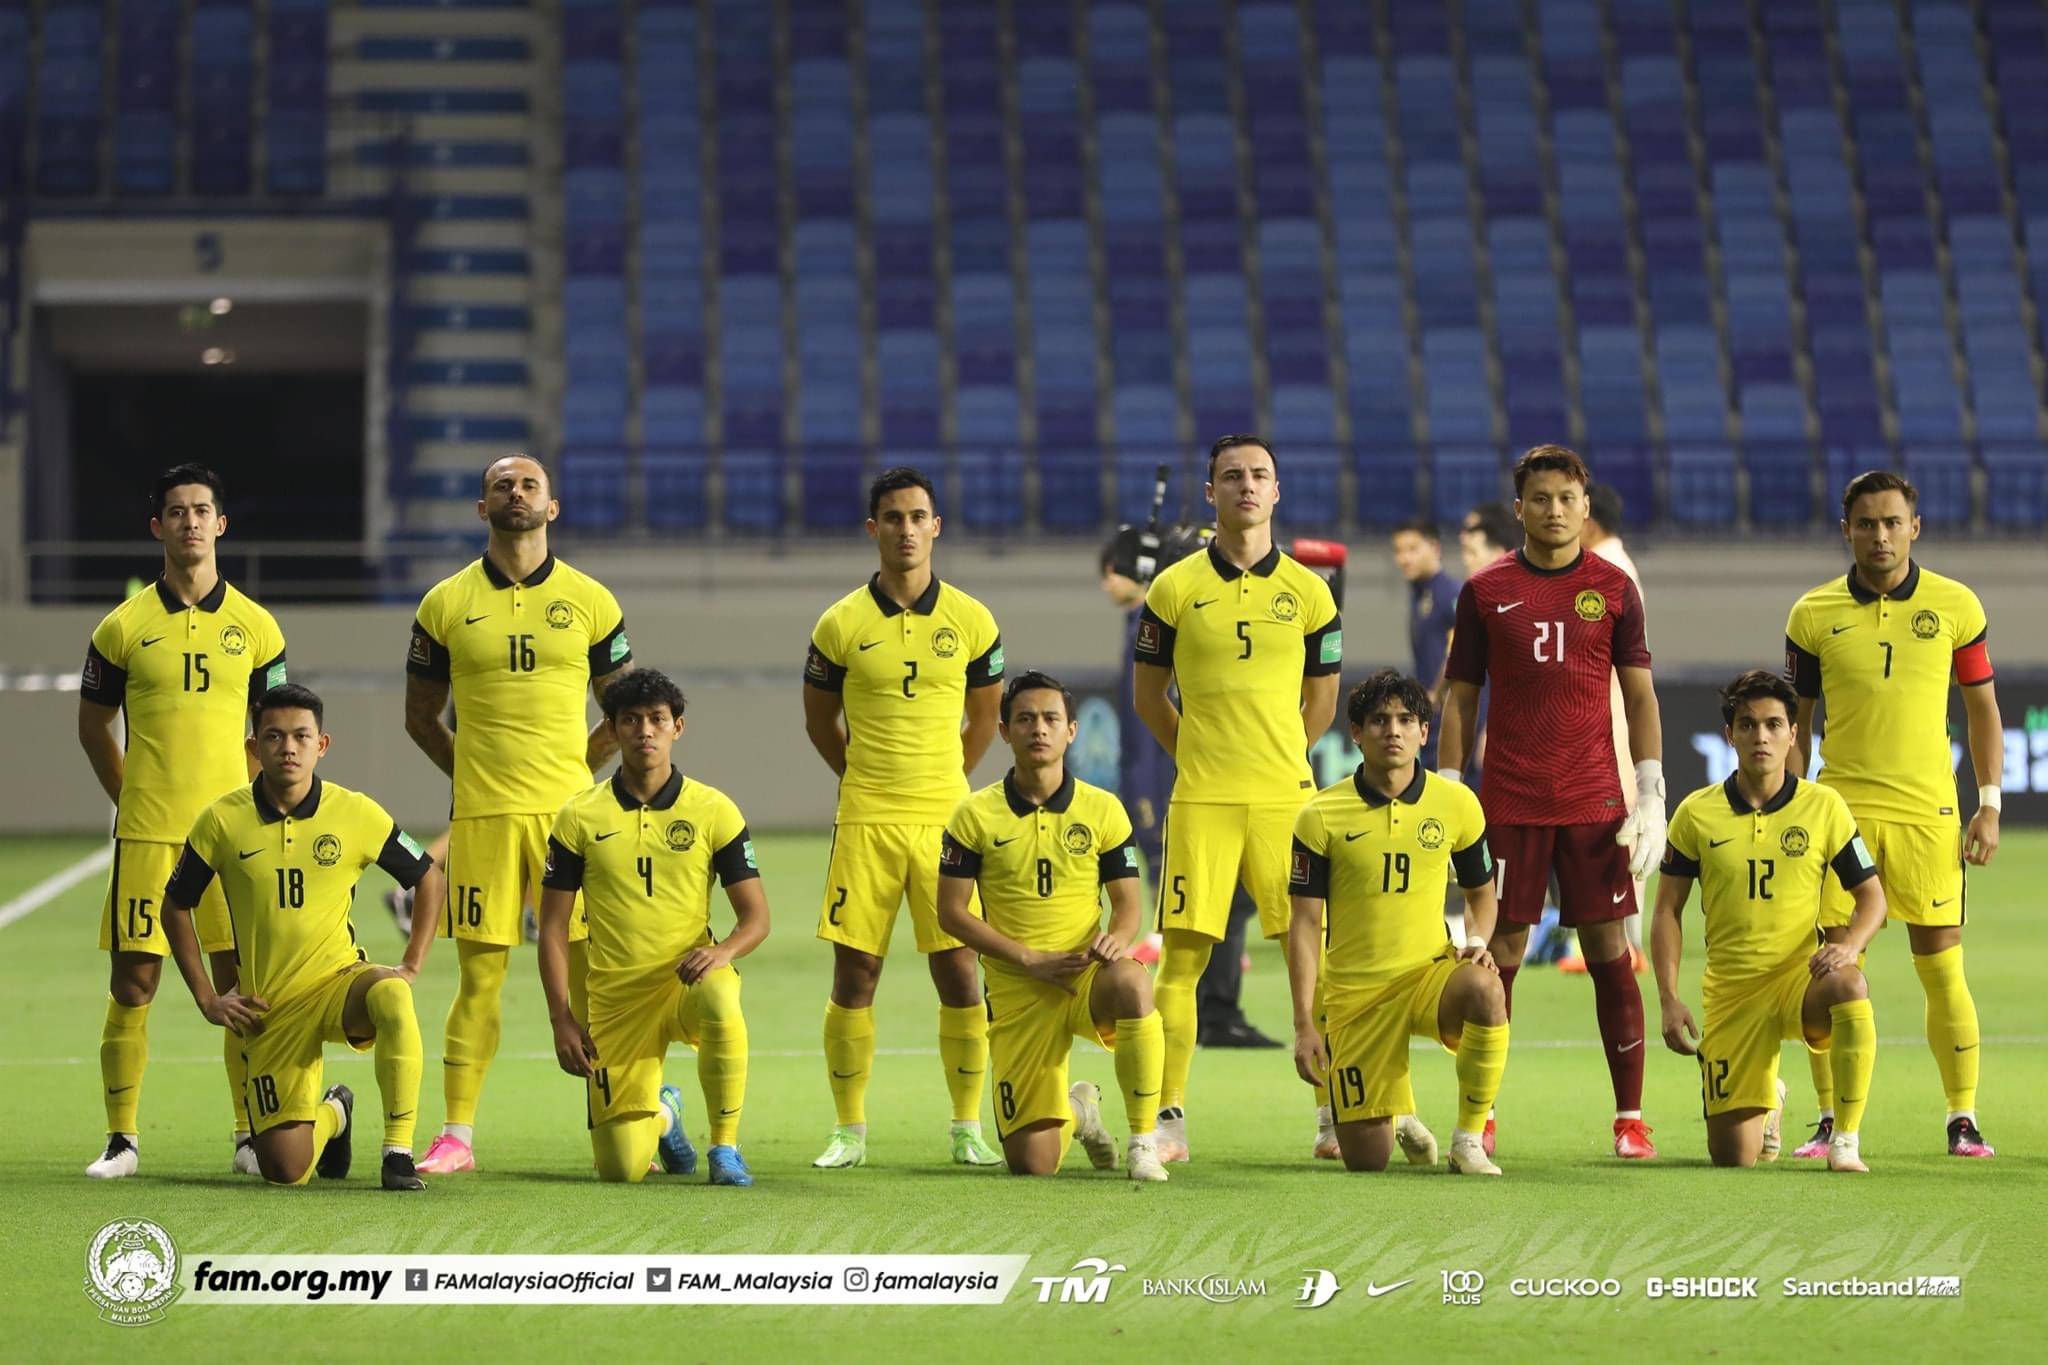 Sepak myanmar sepak indonesia bola kebangsaan lwn pasukan kebangsaan pasukan bola